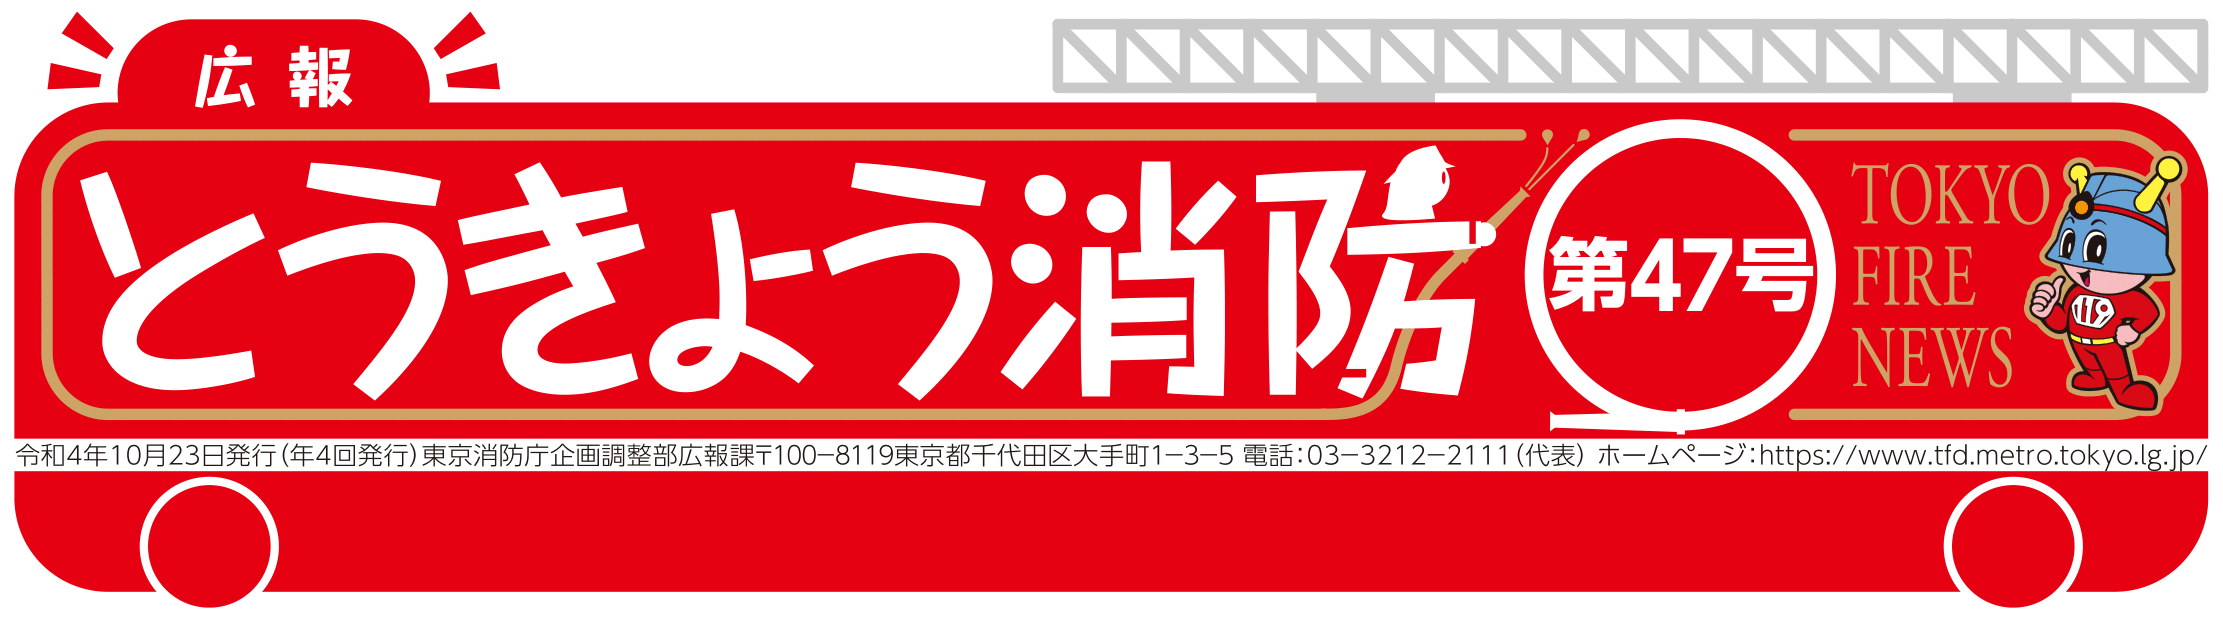 東京消防庁 広報とうきょう消防（第47号）